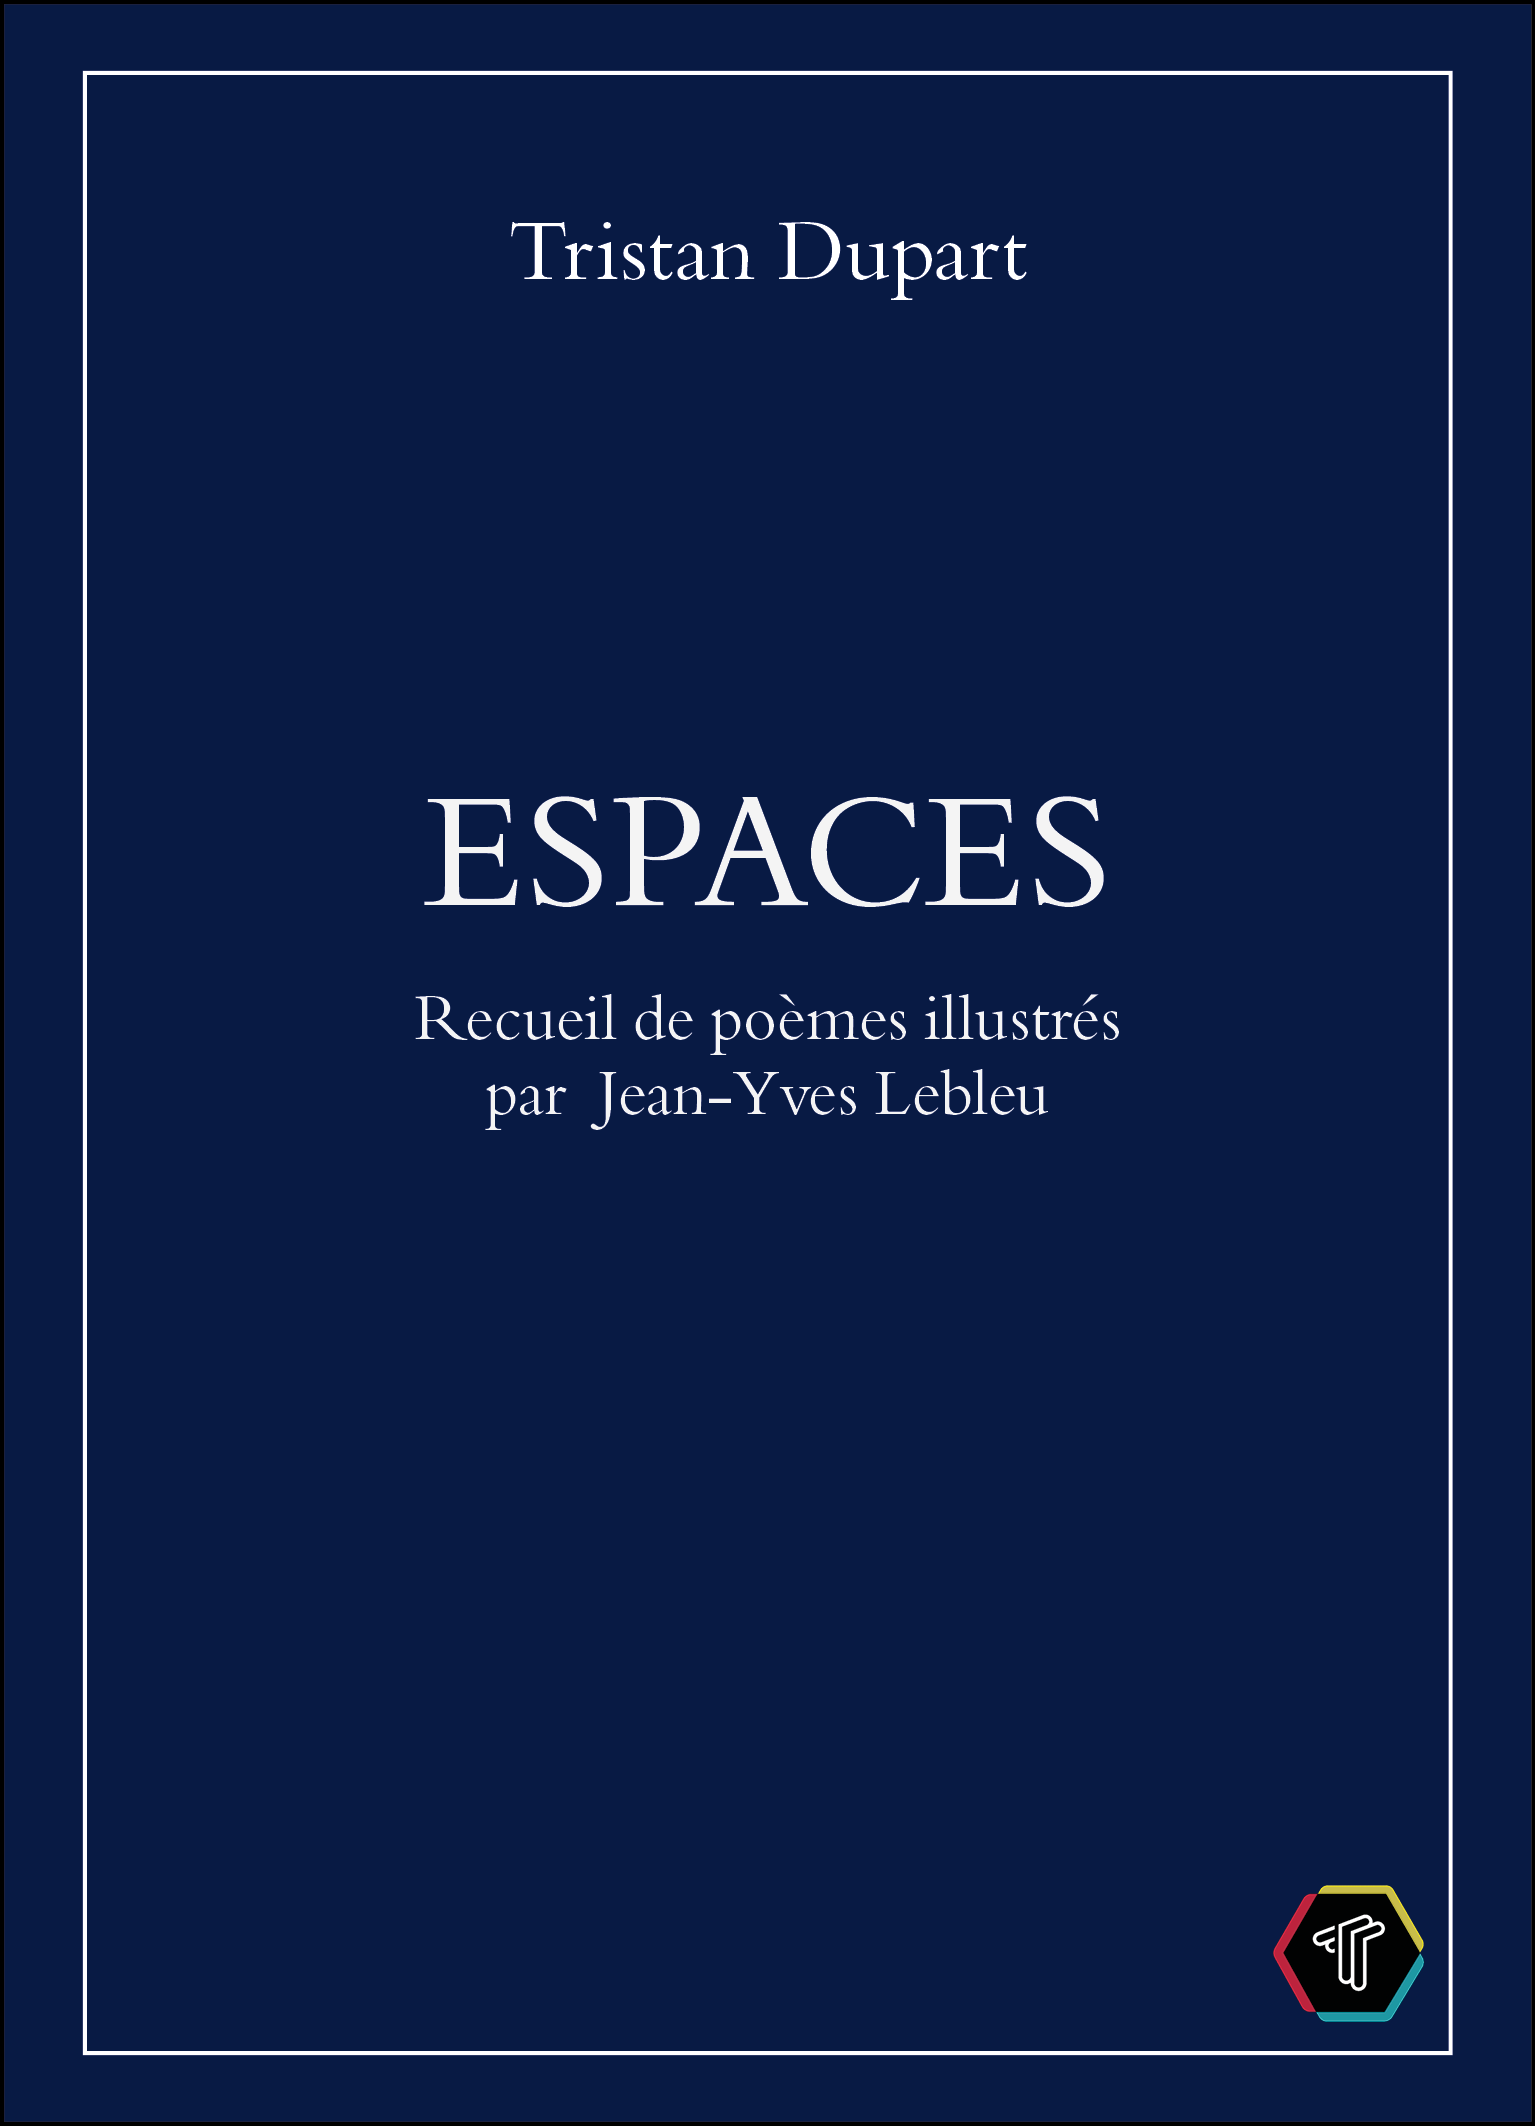 Première de couverture du livre Espaces